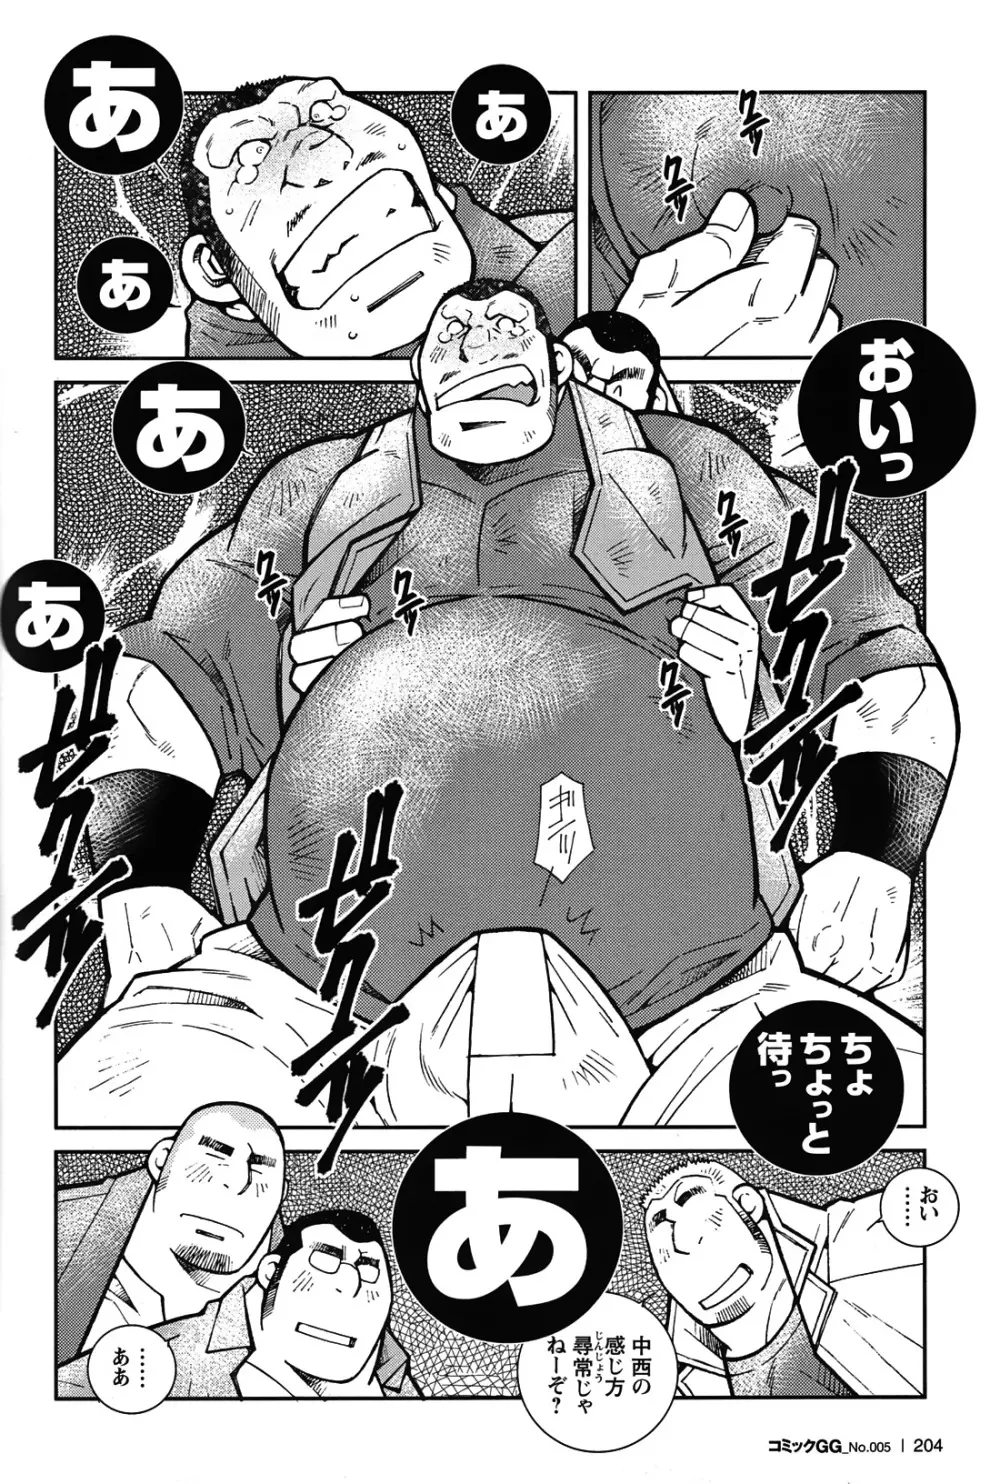 Comic G-men Gaho No.05 188ページ